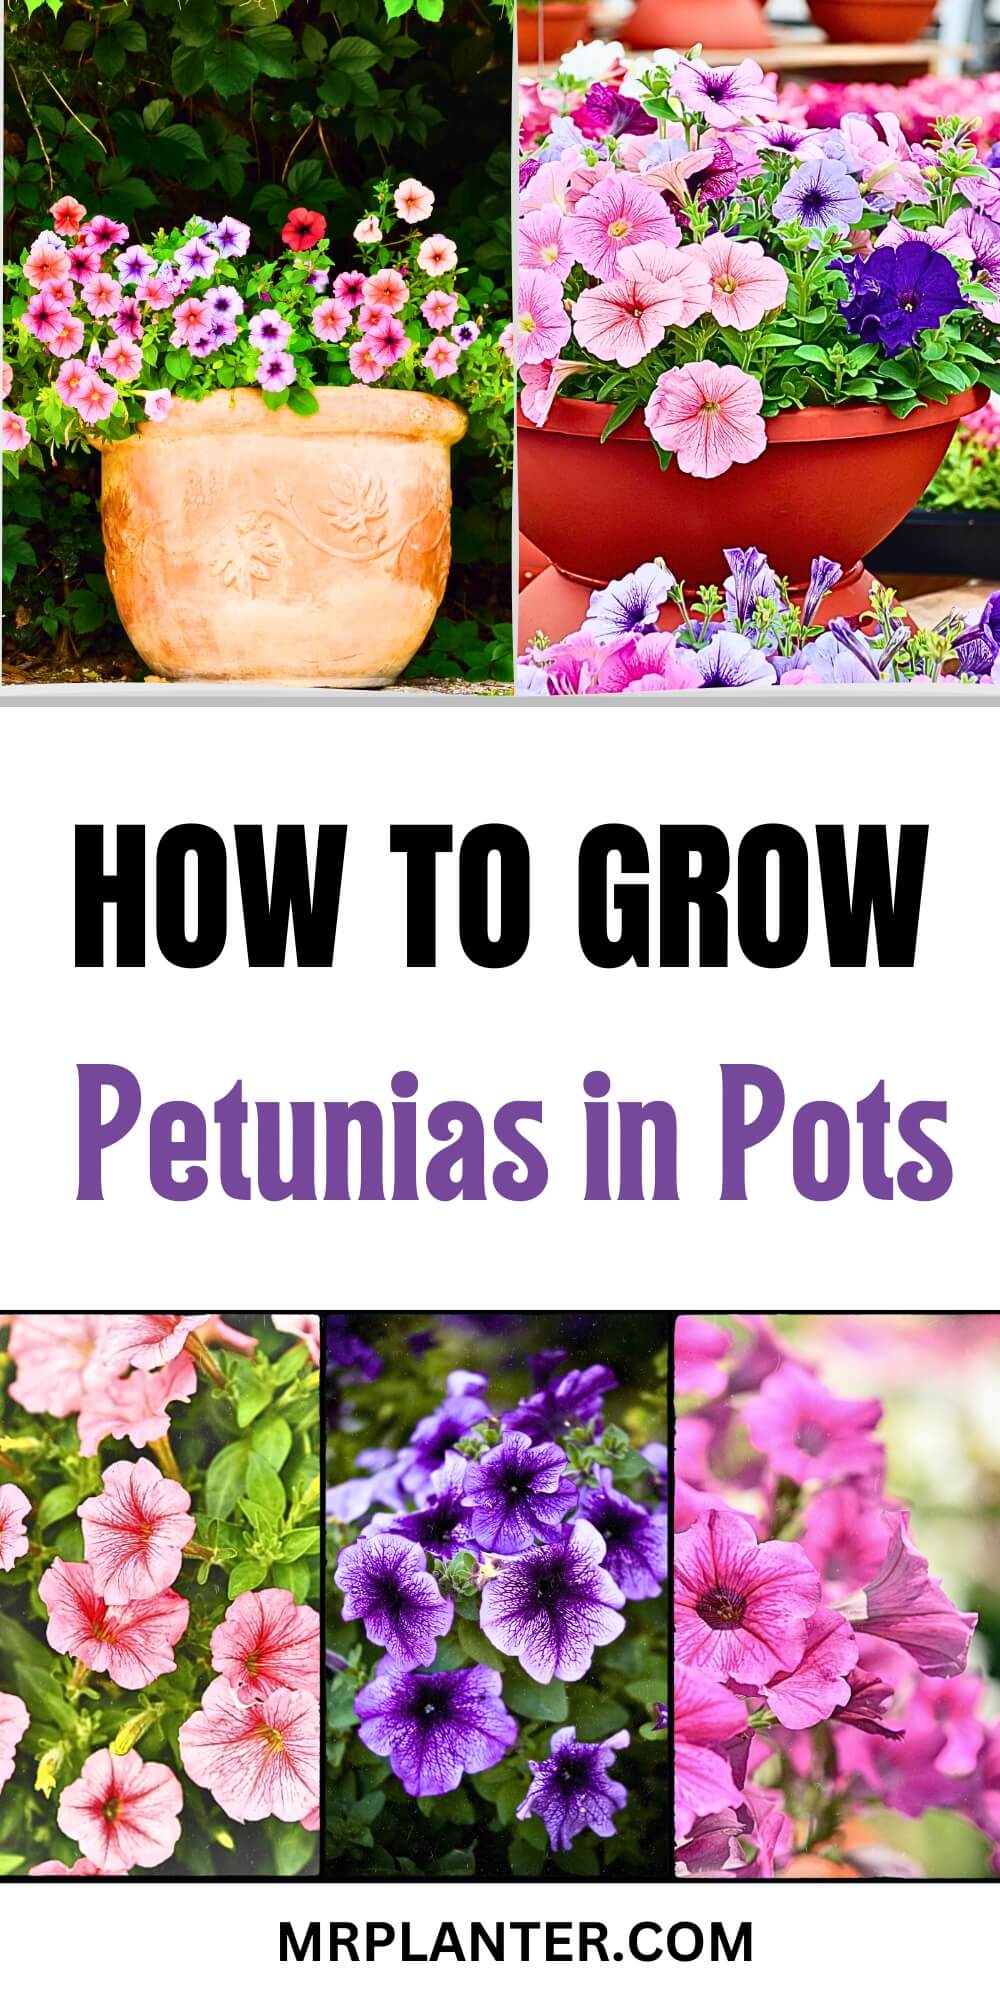 How to Grow Petunias in Pots